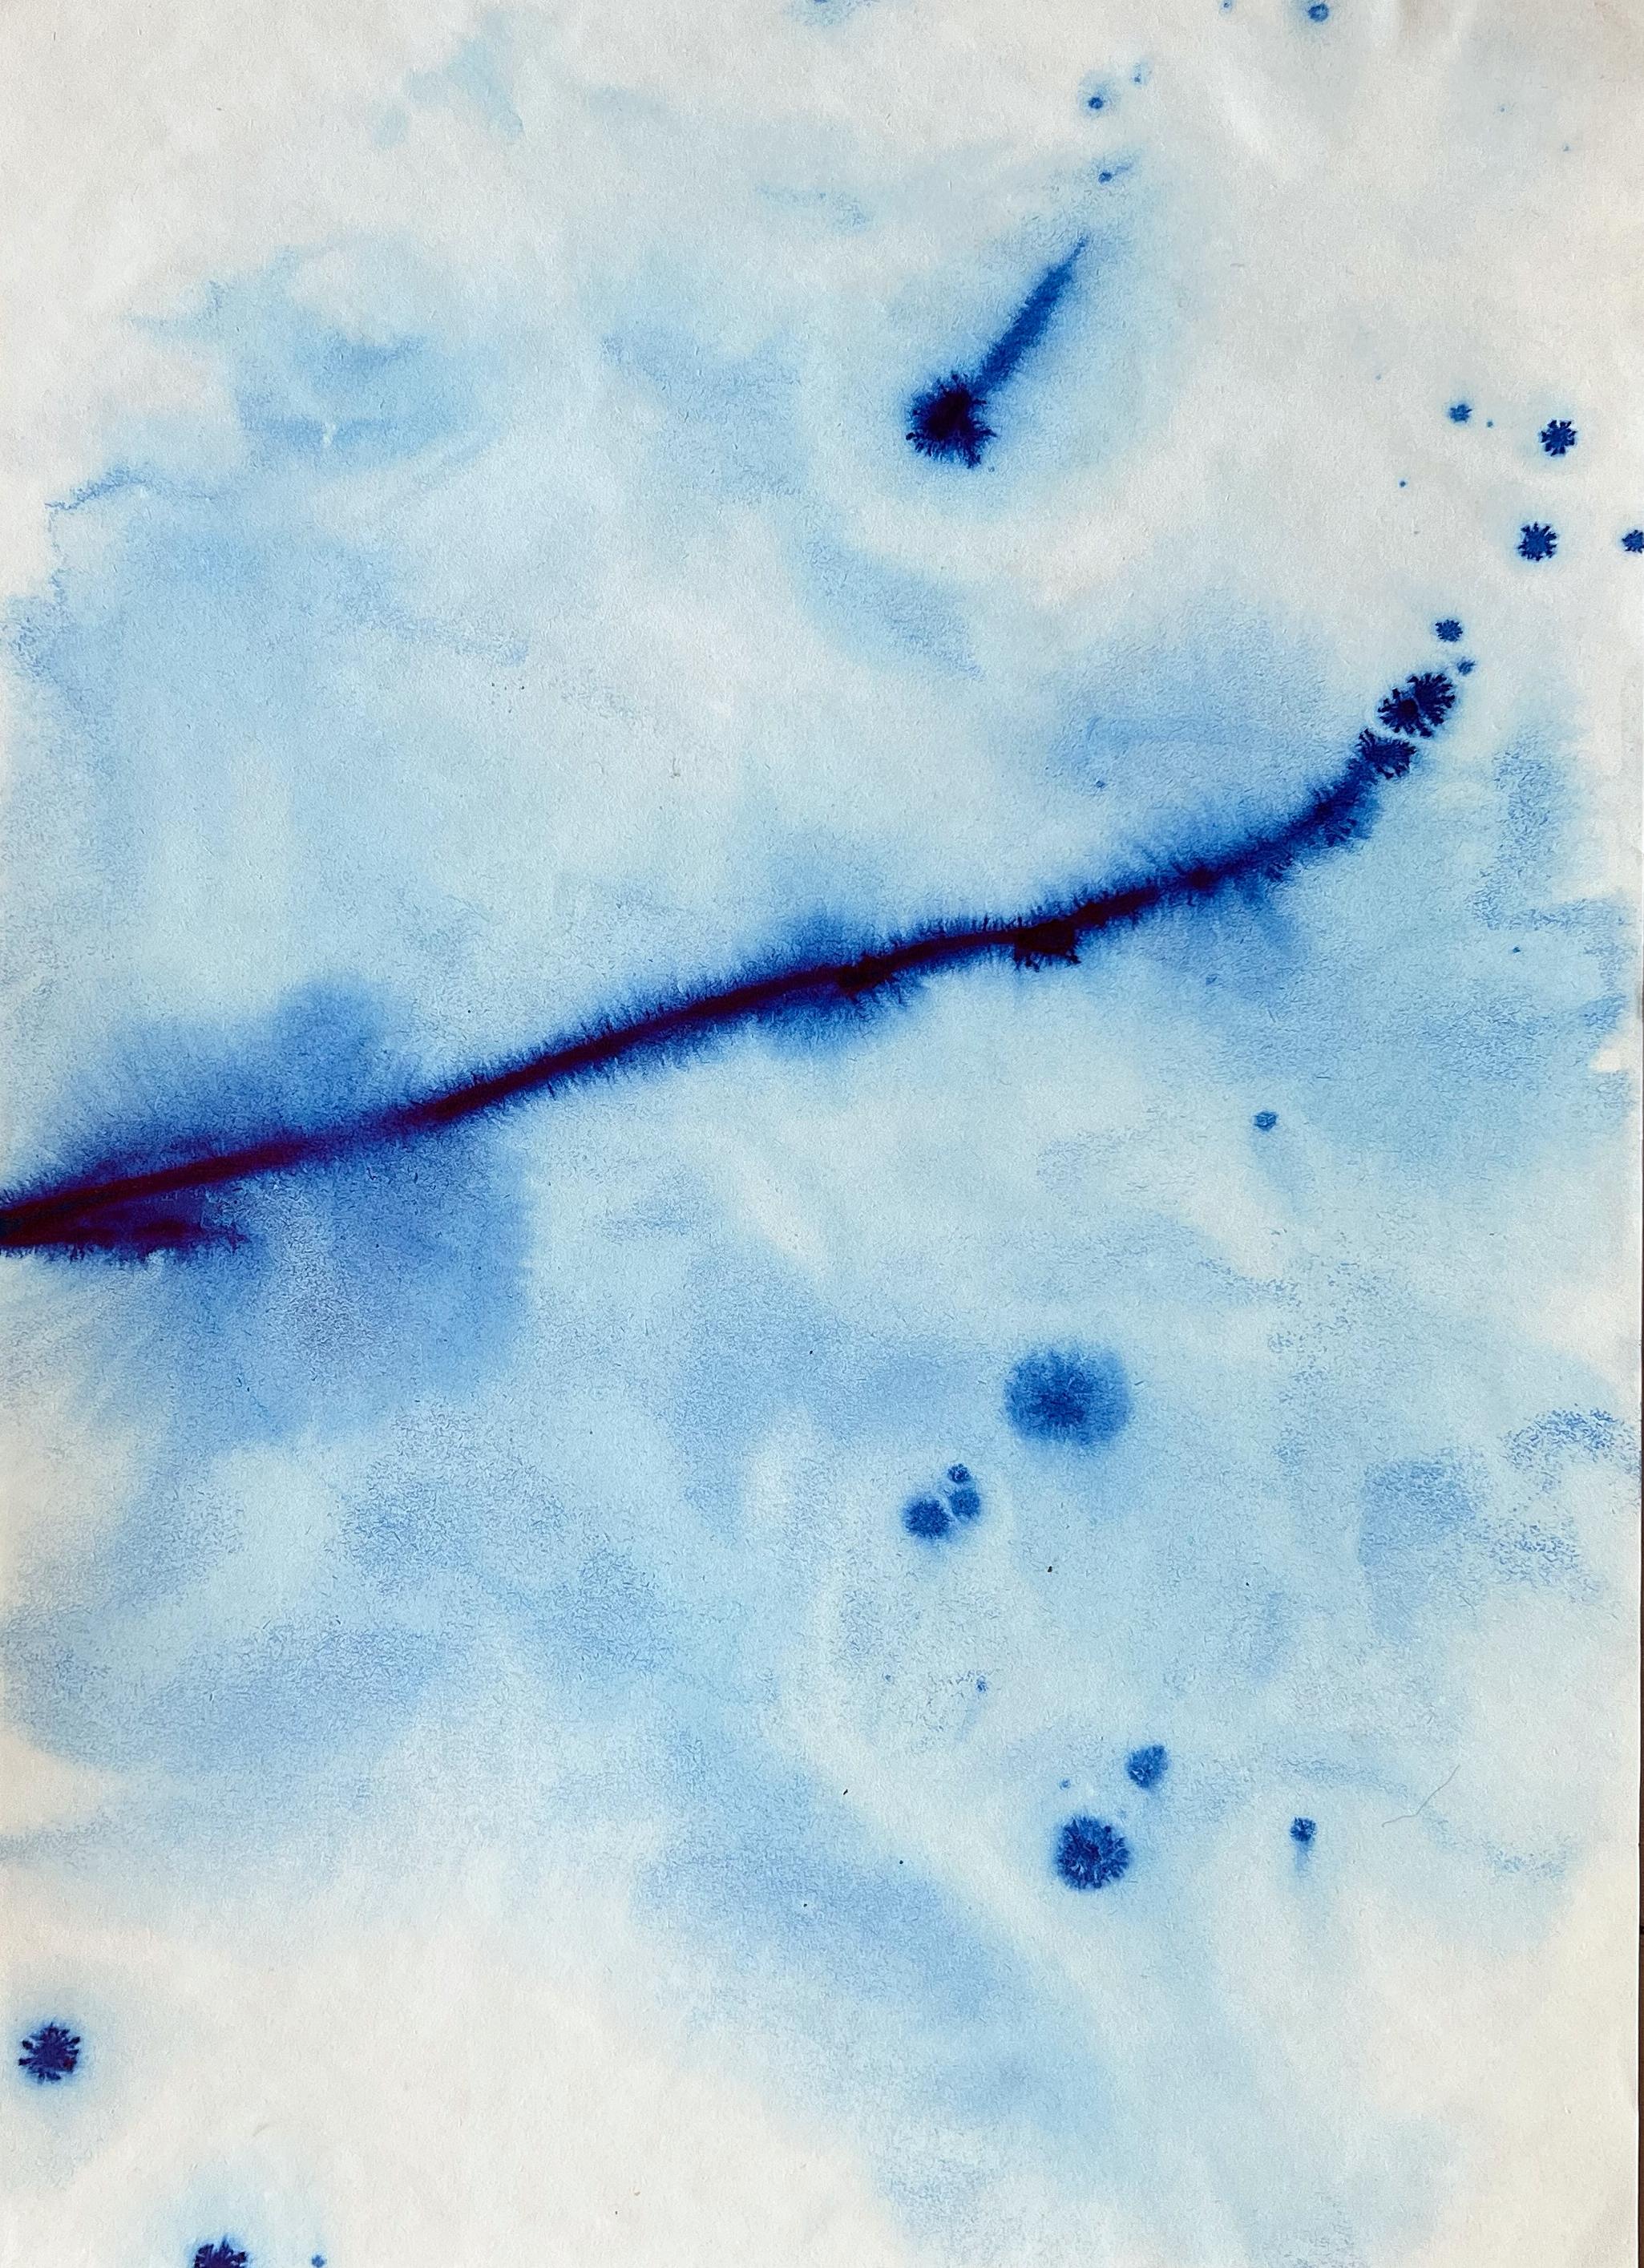 Landscape Painting TUSET - Waves de mer bleues méditerranéennes, peinture à l'encre faite à la main, Ripples Calming, édition limitée